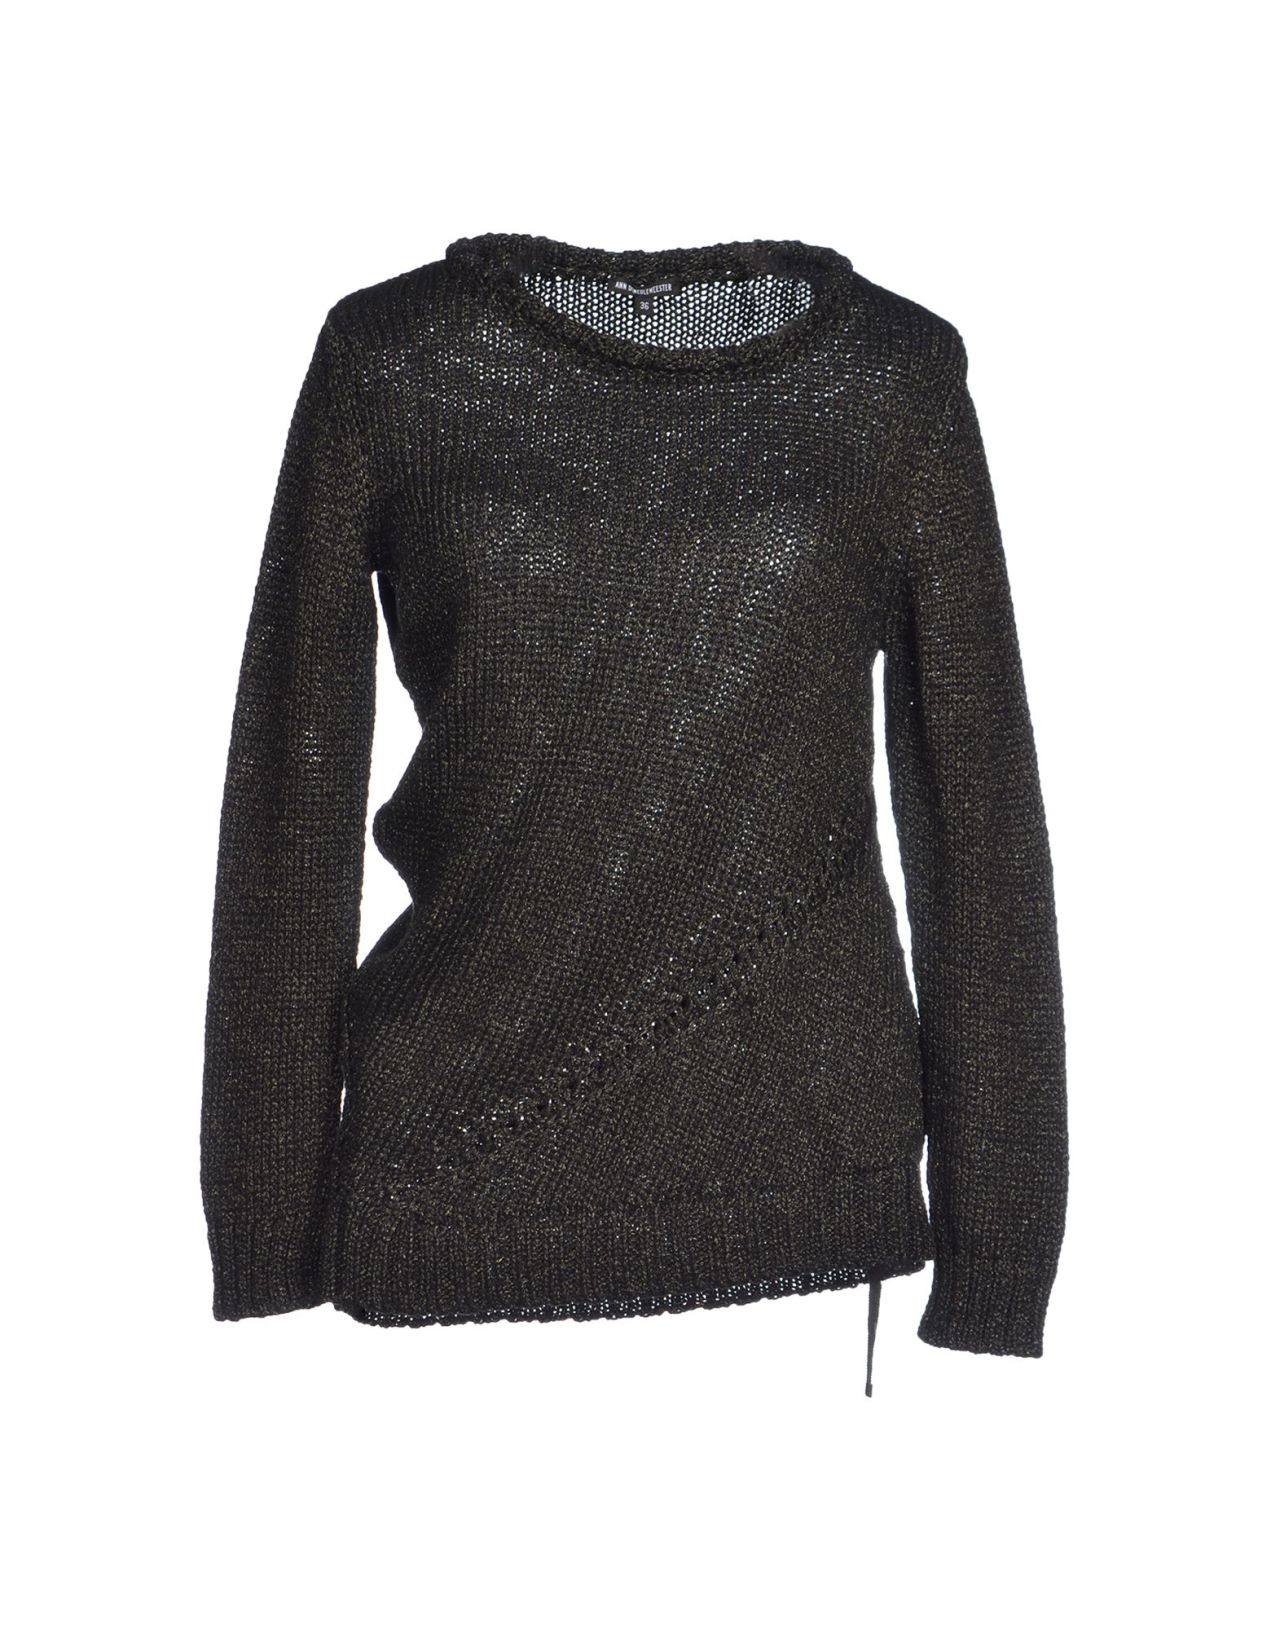 ANN DEM | Sweaters for women, Sweaters, Sweaters online